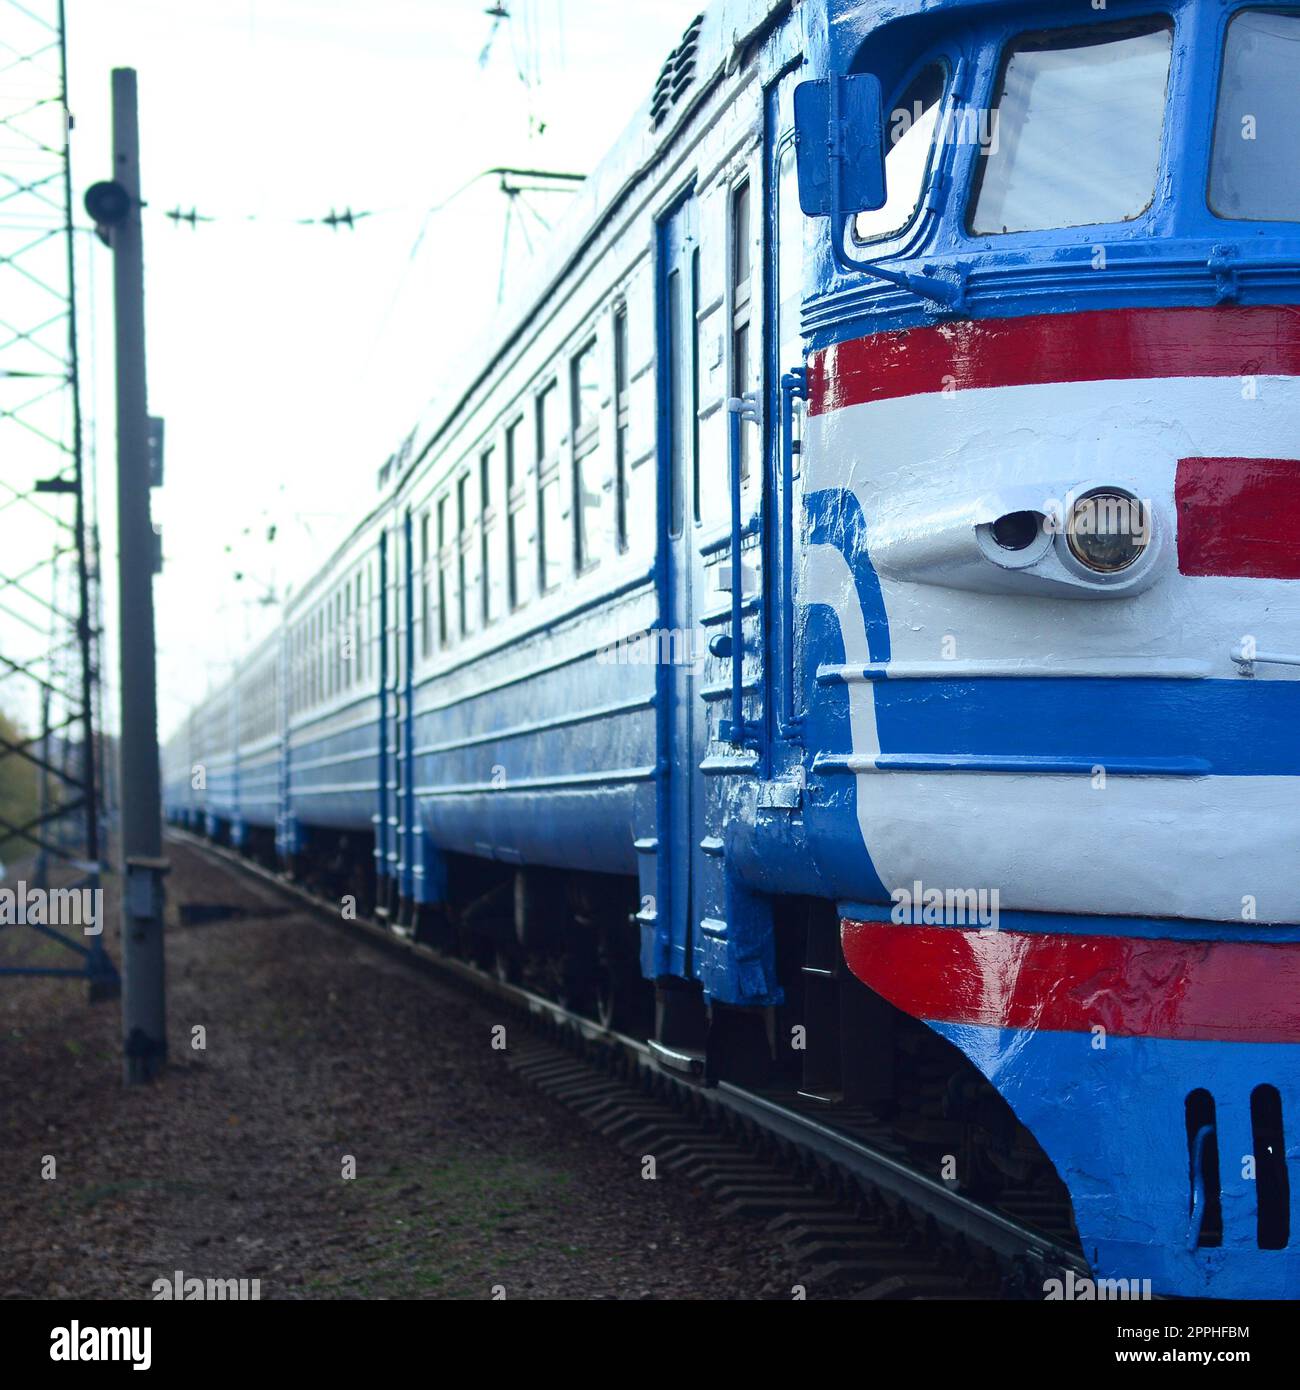 Alte sowjetische elektrische Eisenbahn mit veraltetem Design, die per Bahn fährt Stockfoto